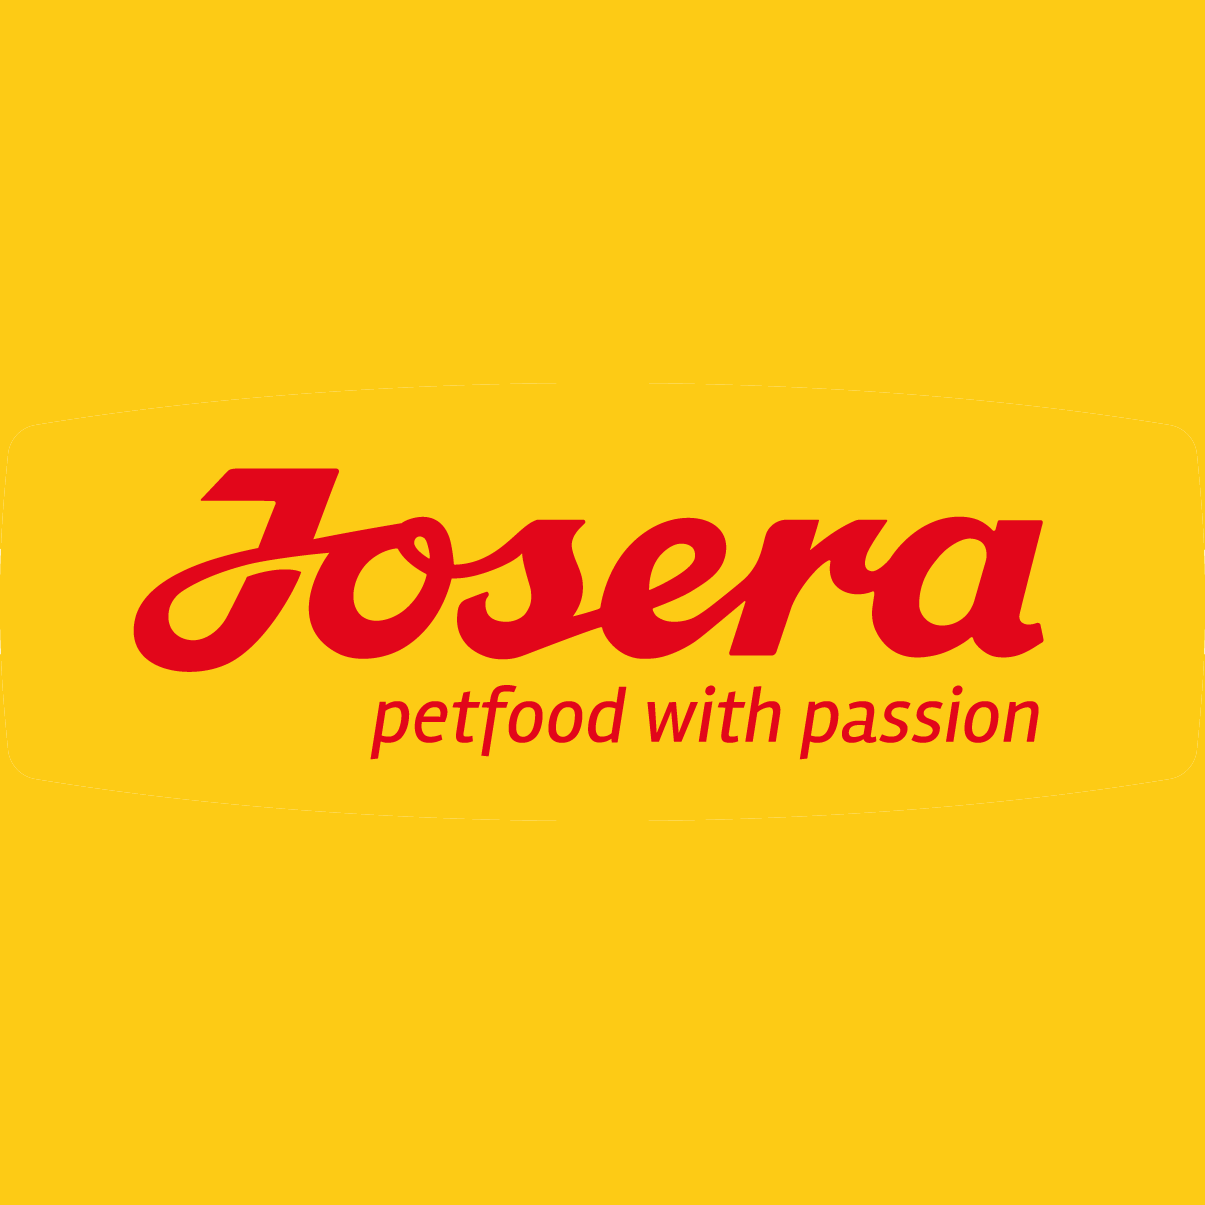 Josera petfood GmbH & Co. KG